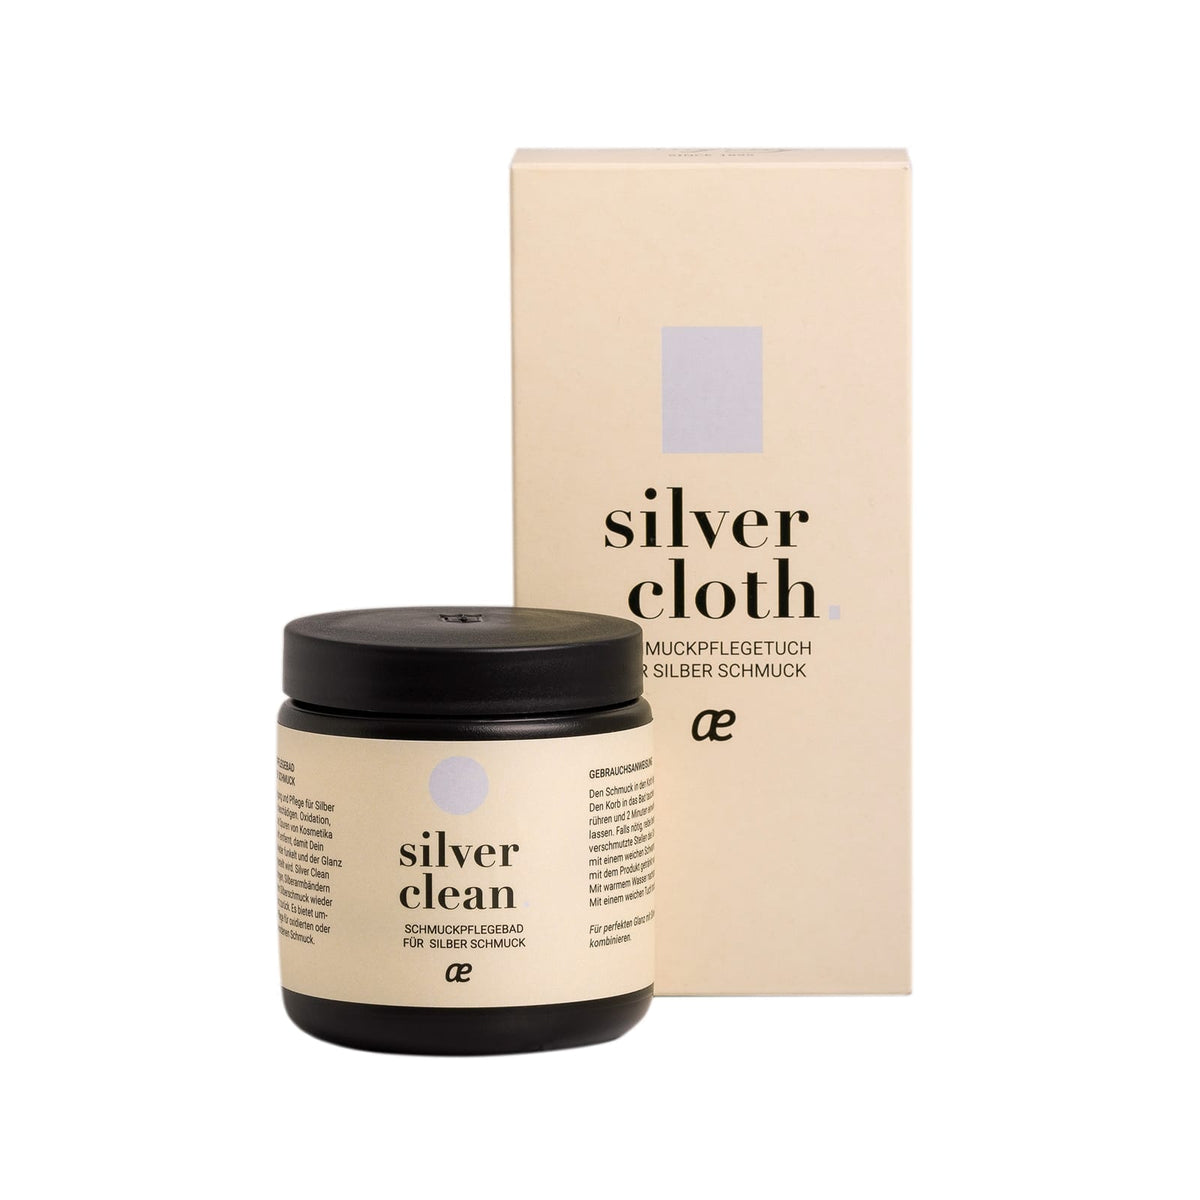 silver clean & silver cloth